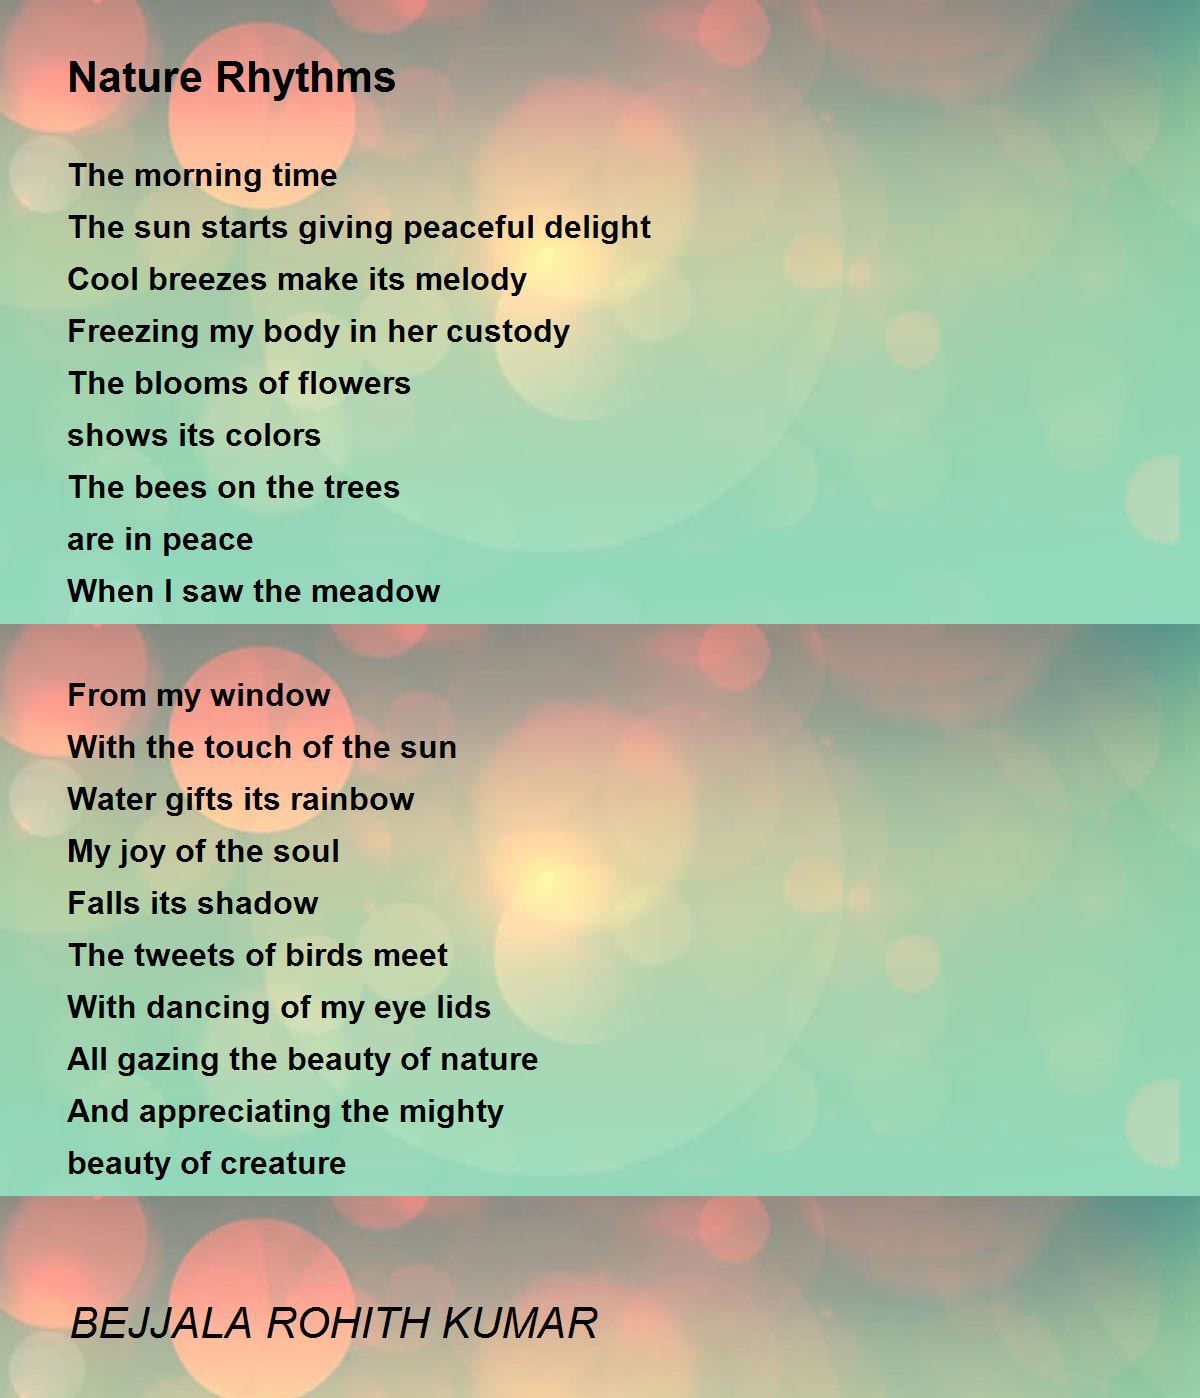 Nature Rhythms - Nature Rhythms Poem by BEJJALA ROHITH KUMAR